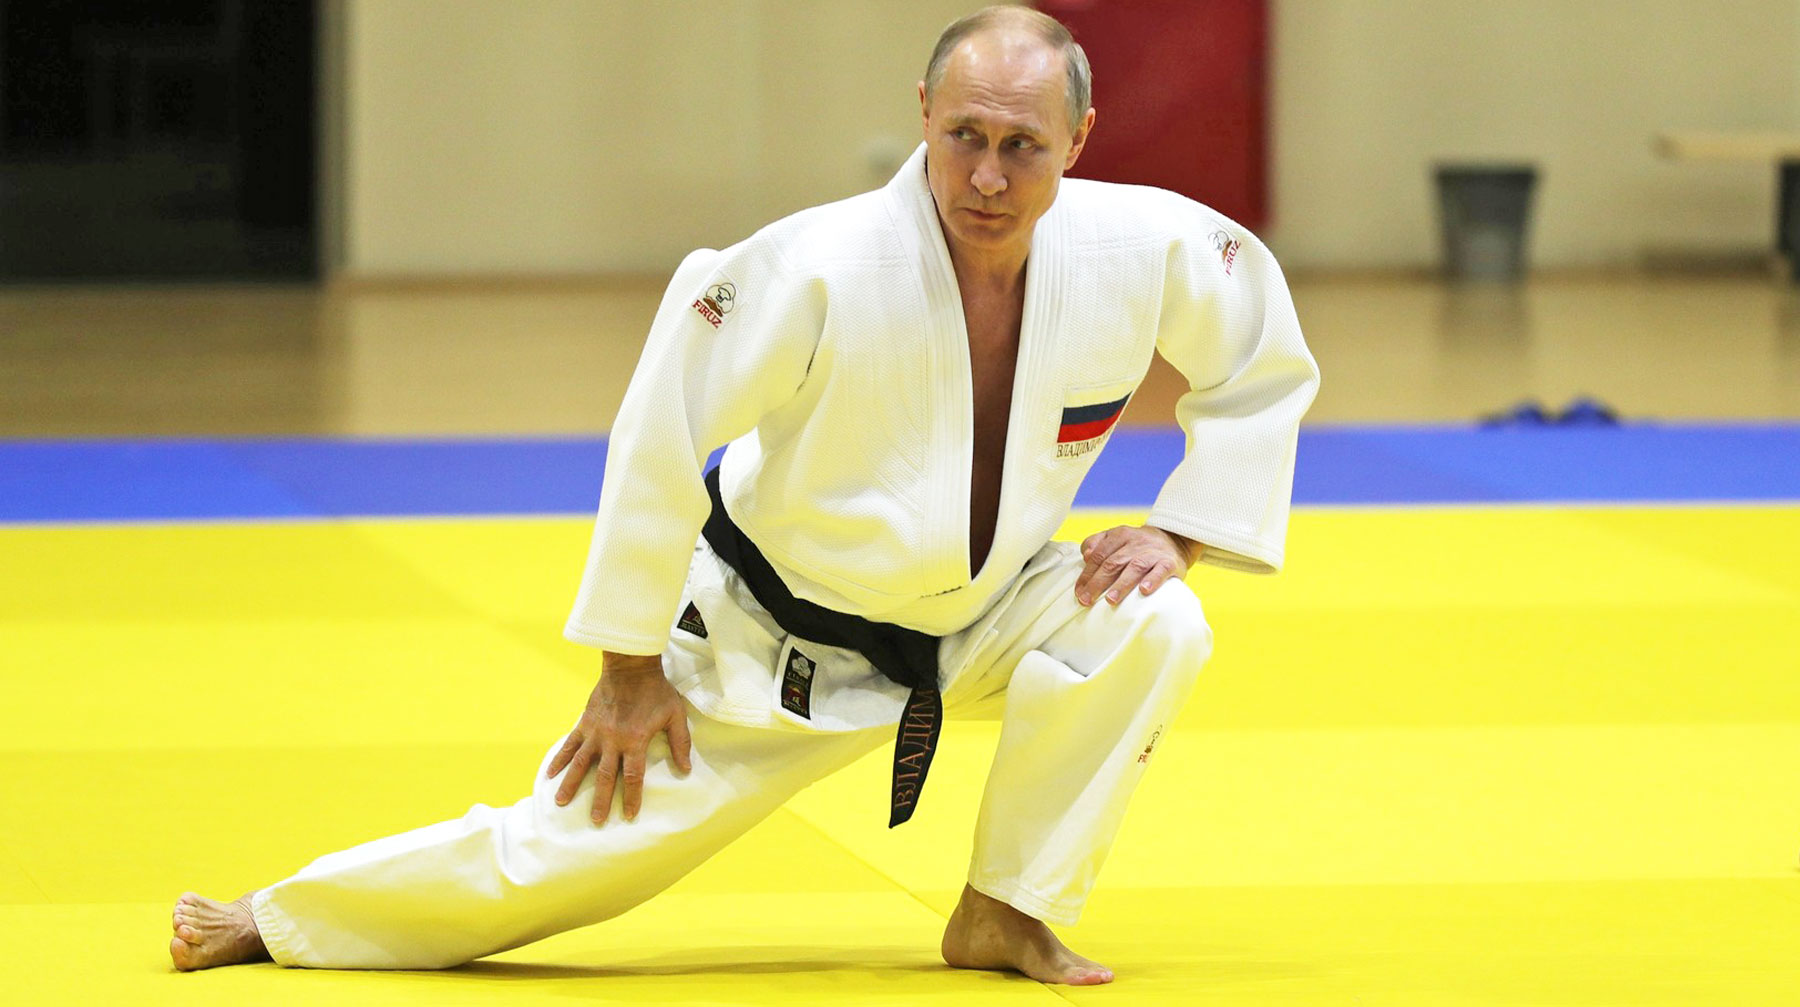 Президент России в кимоно потренировался в сочинском центре «Юг-спорт» Президент России Владимир Путин на тренировке по дзюдо.